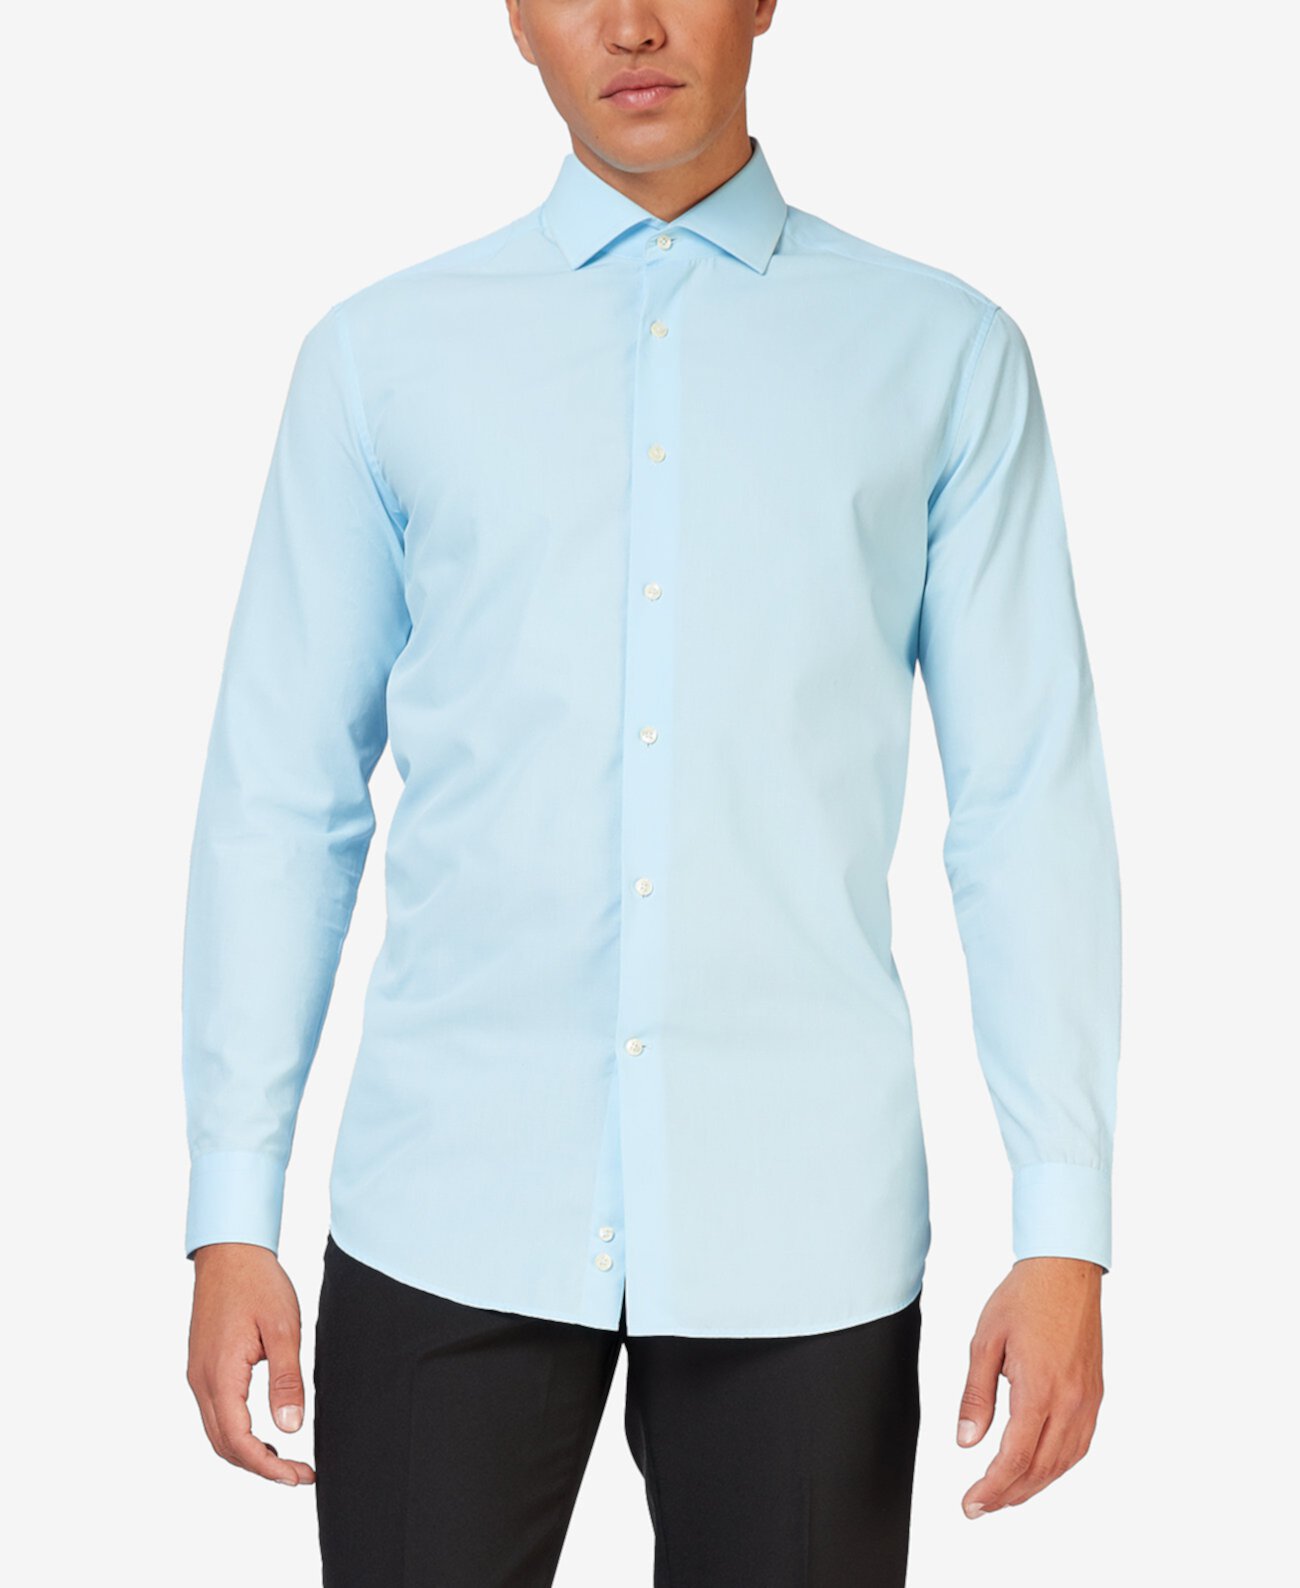 Мужская однотонная рубашка классного синего цвета OppoSuits